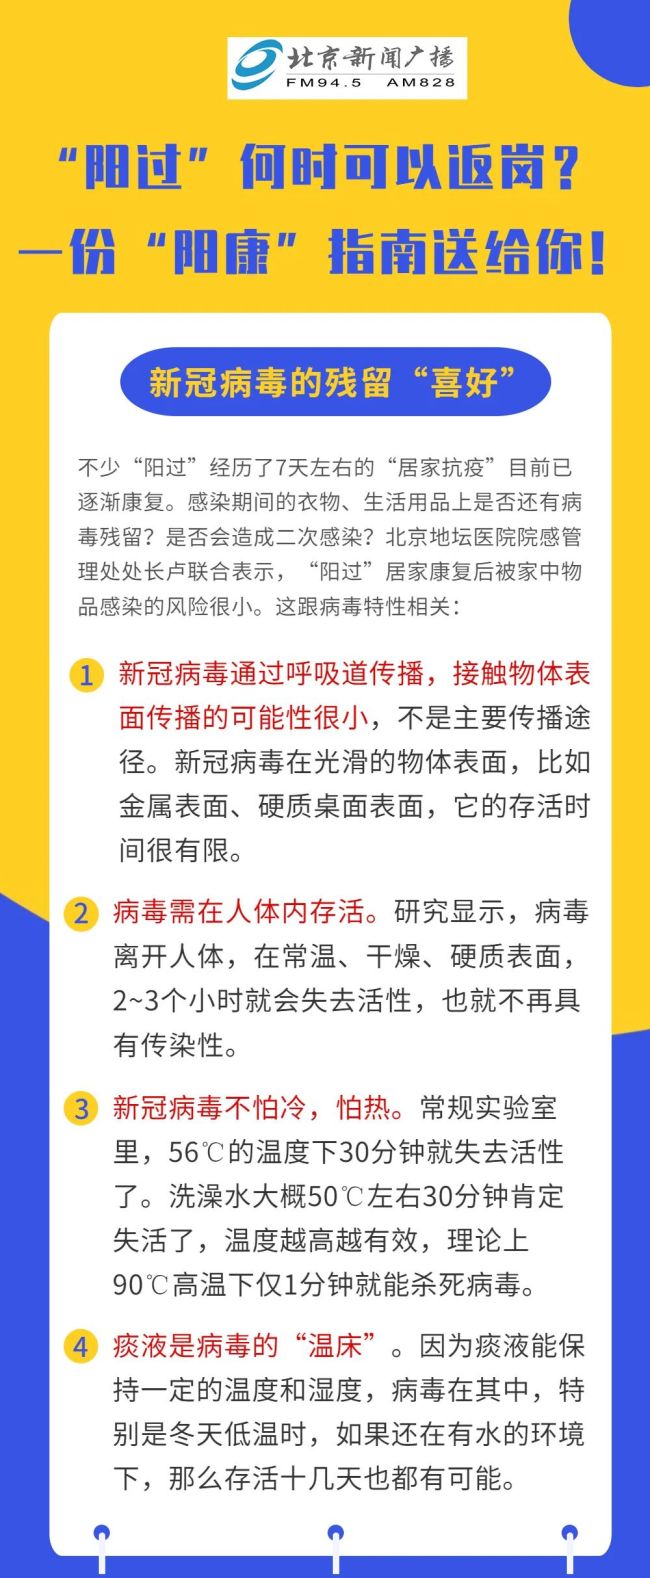 中国首台大坡度螺旋隧道掘进机北山1号投入使用 - Terea Play Casino Login App - 百度评论 百度热点快讯